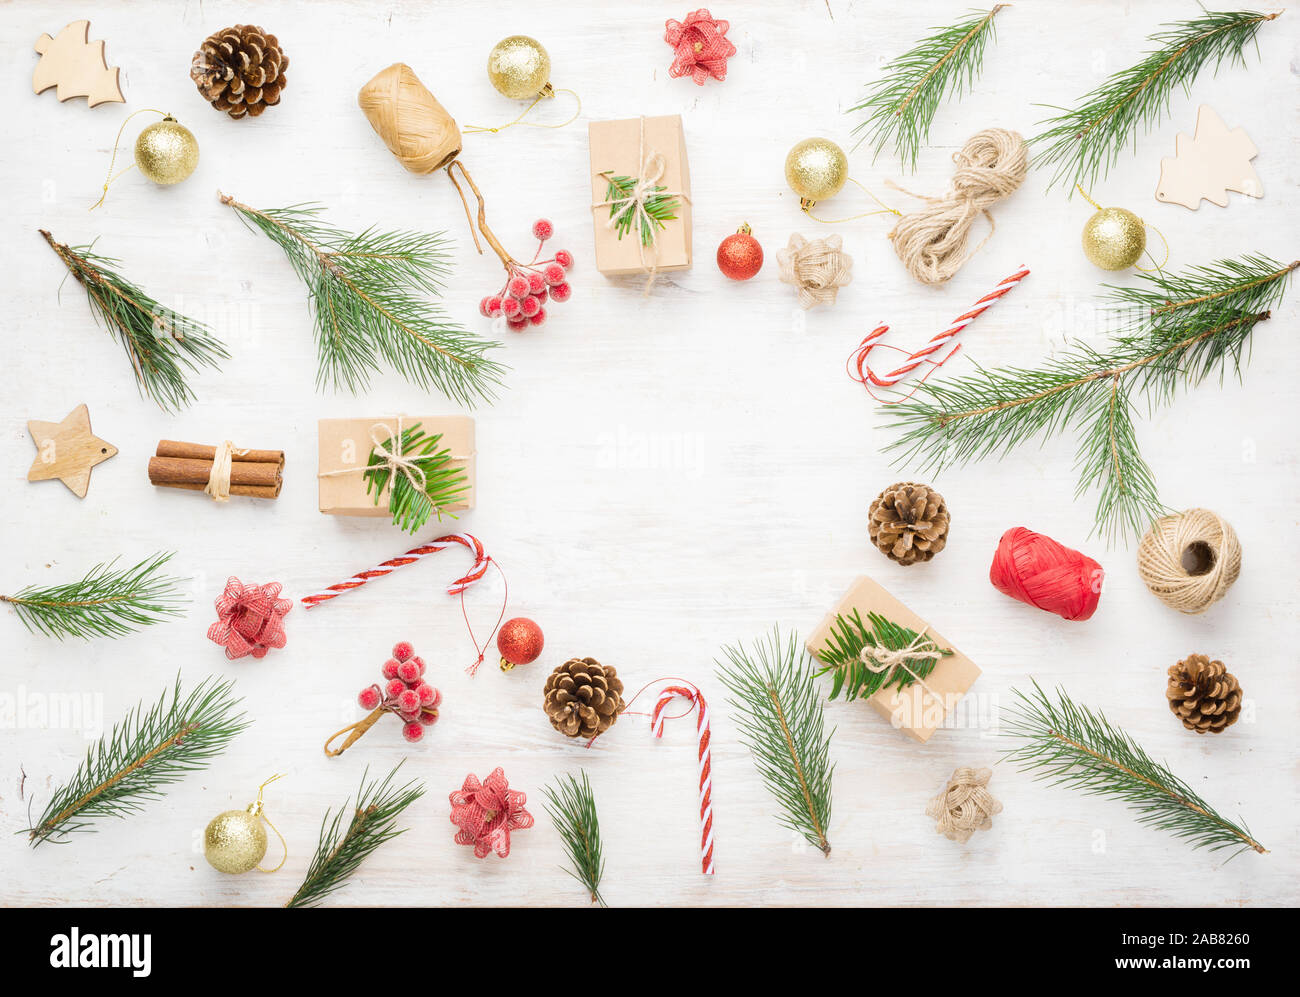 Kreative Weihnachten Hintergrund verschiedener Objekte einschließlich geschenkboxen, Zimtstangen, dekorative Beeren auf weißem Holz- Tabelle, kopieren Raum in der Mitte, am weißen Tisch, selektiver Fokus Stockfoto